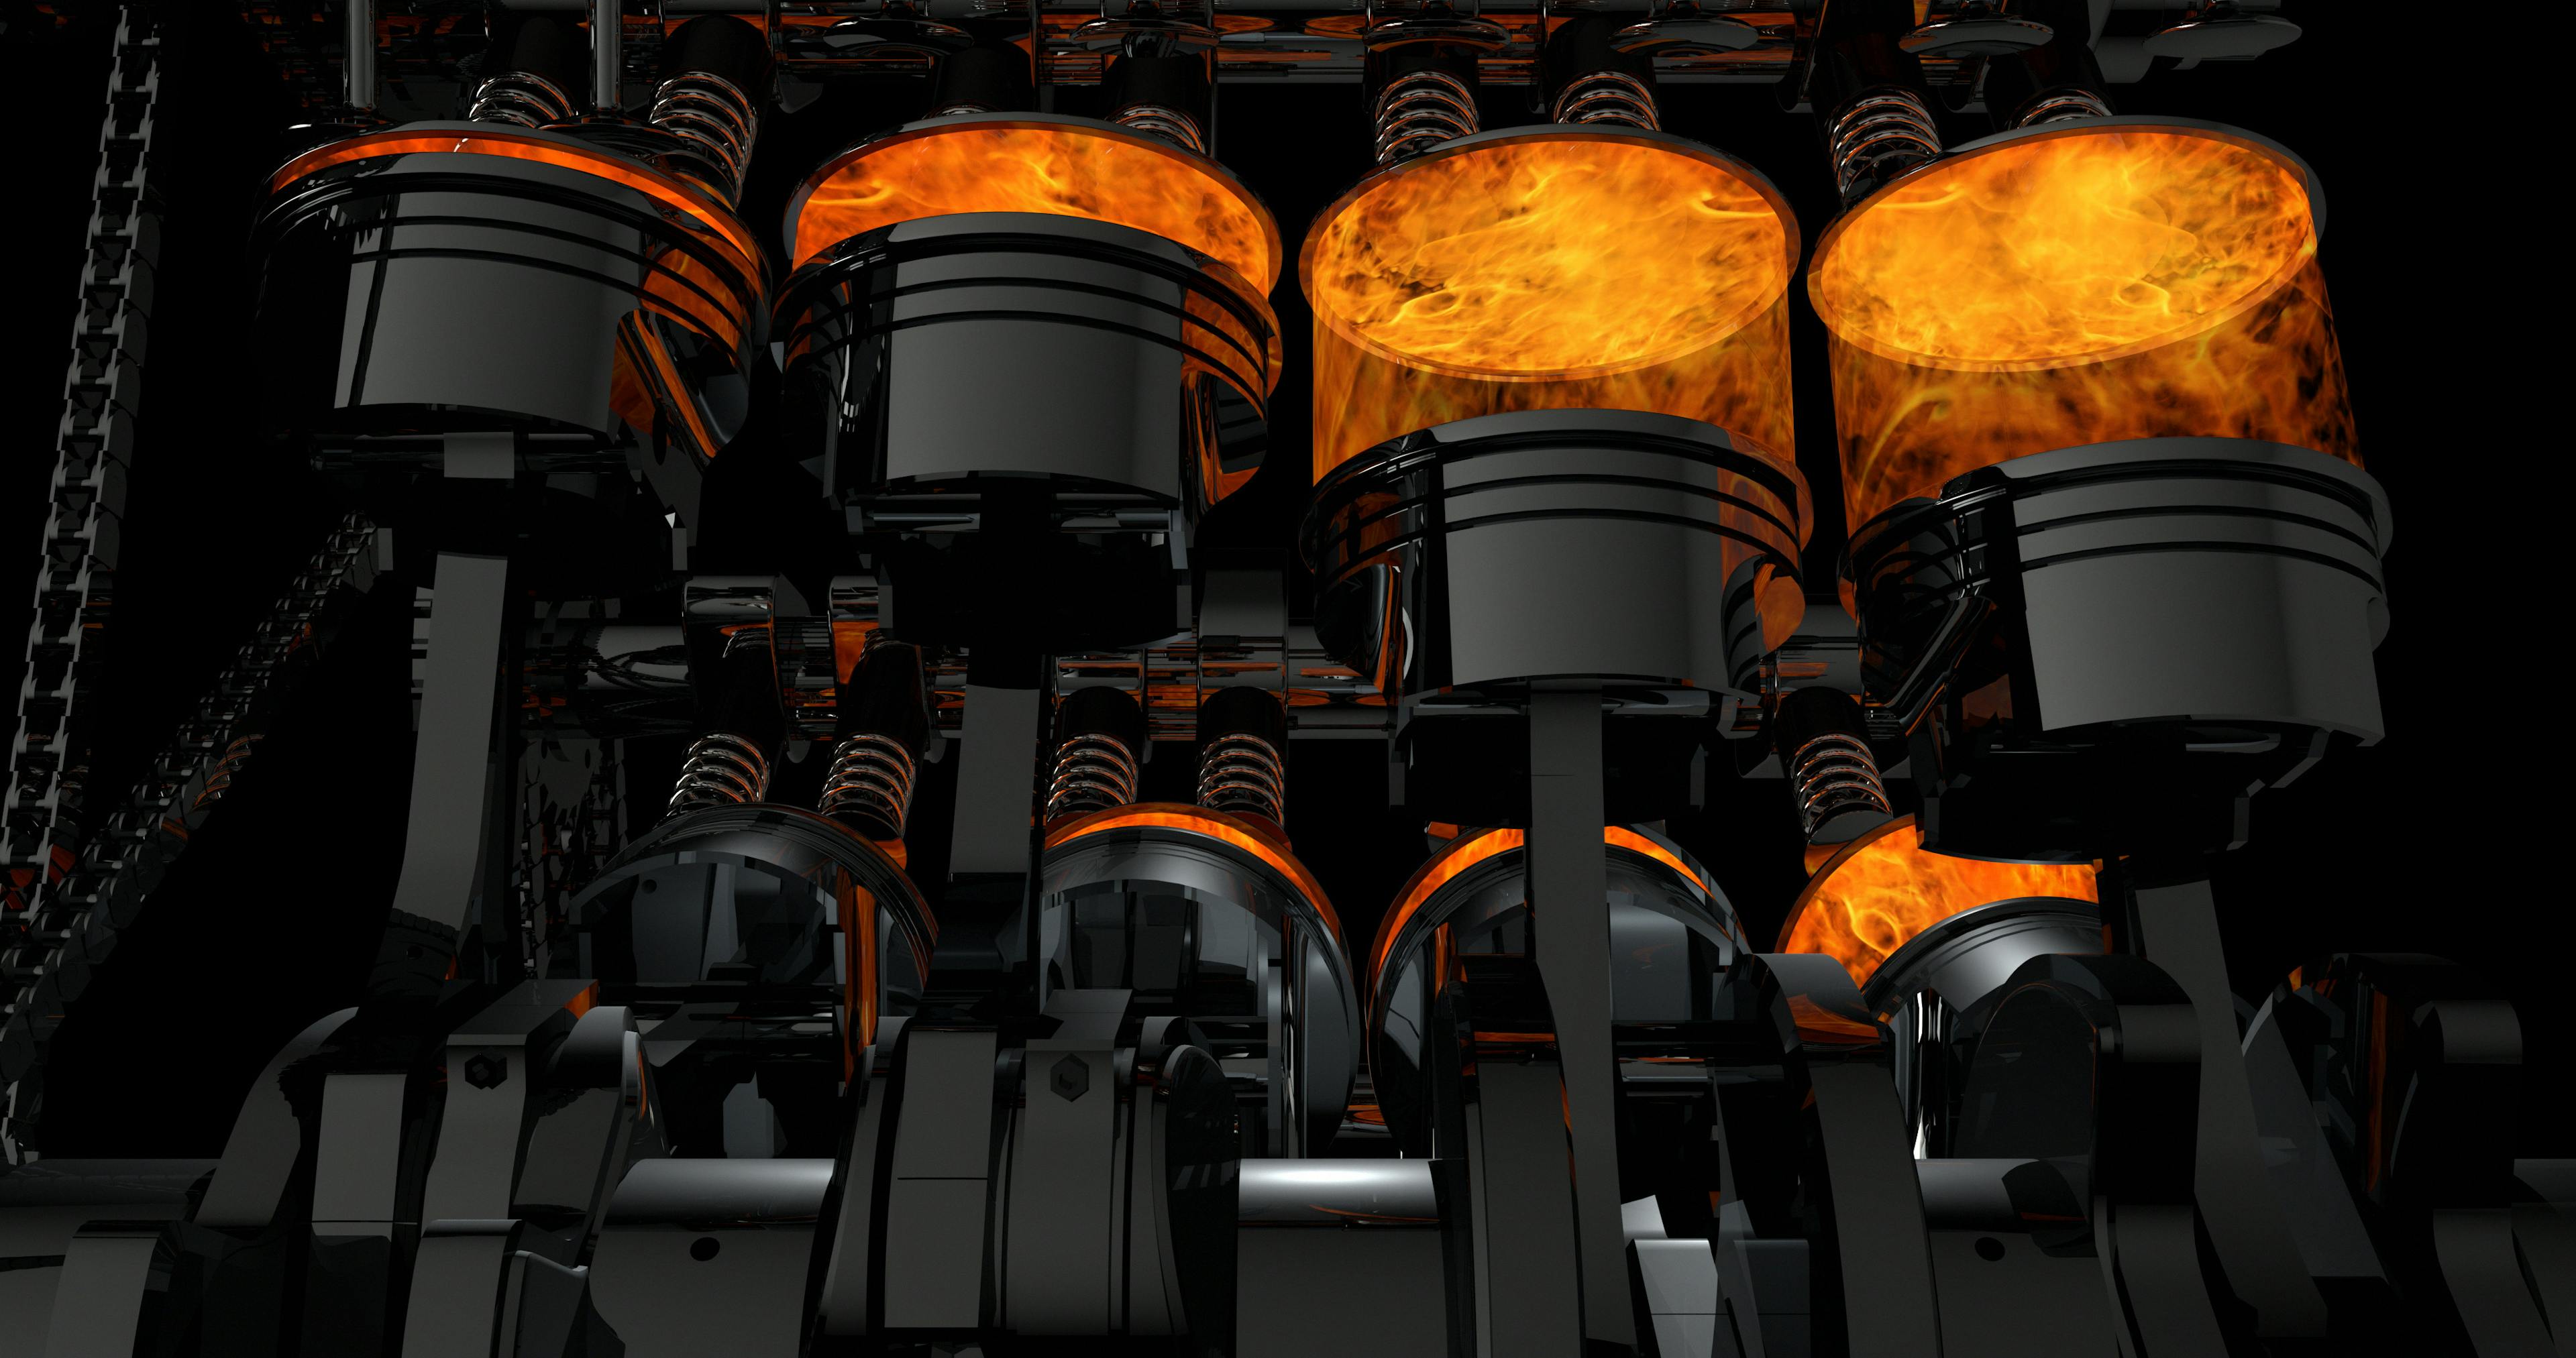 Modèle 3D d'un moteur V8 fonctionnel. Les pistons et autres pièces mécaniques sont en mouvement.